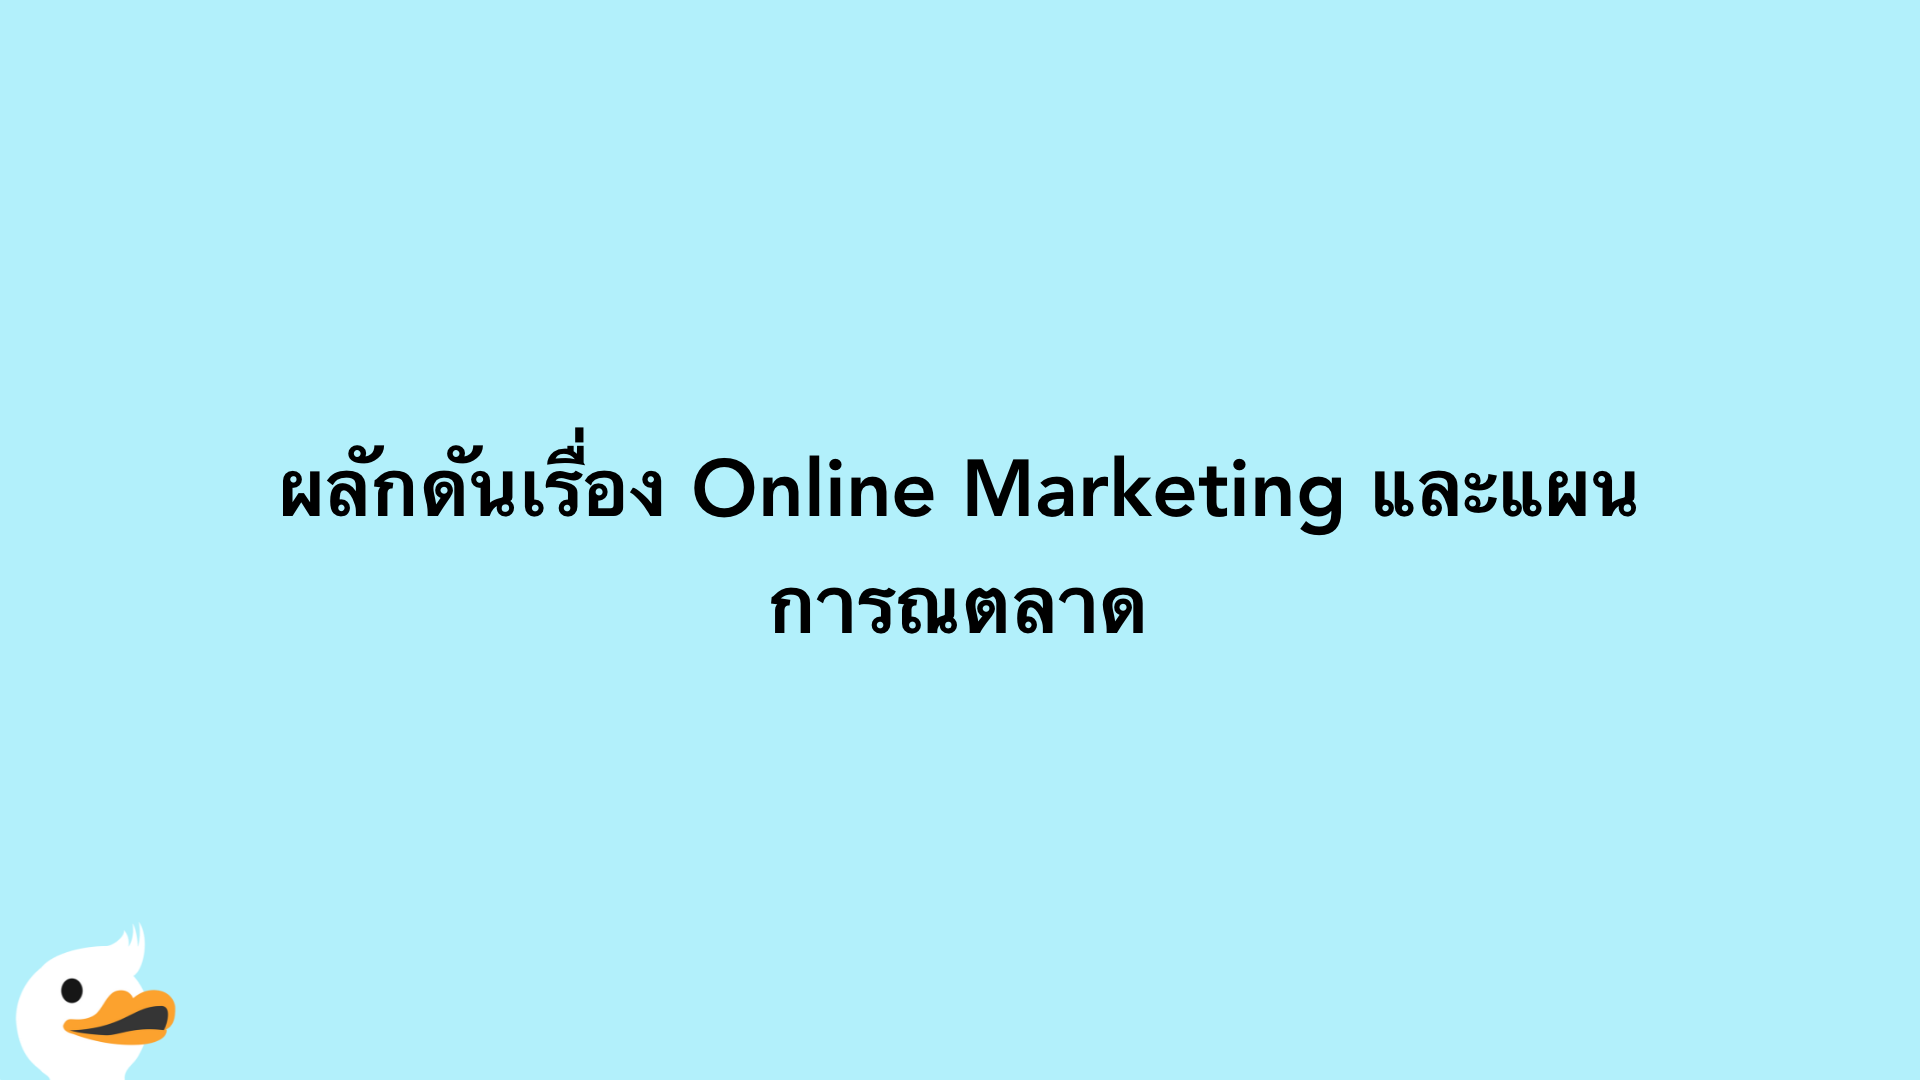 ผลักดันเรื่อง Online Marketing และแผนการณตลาด